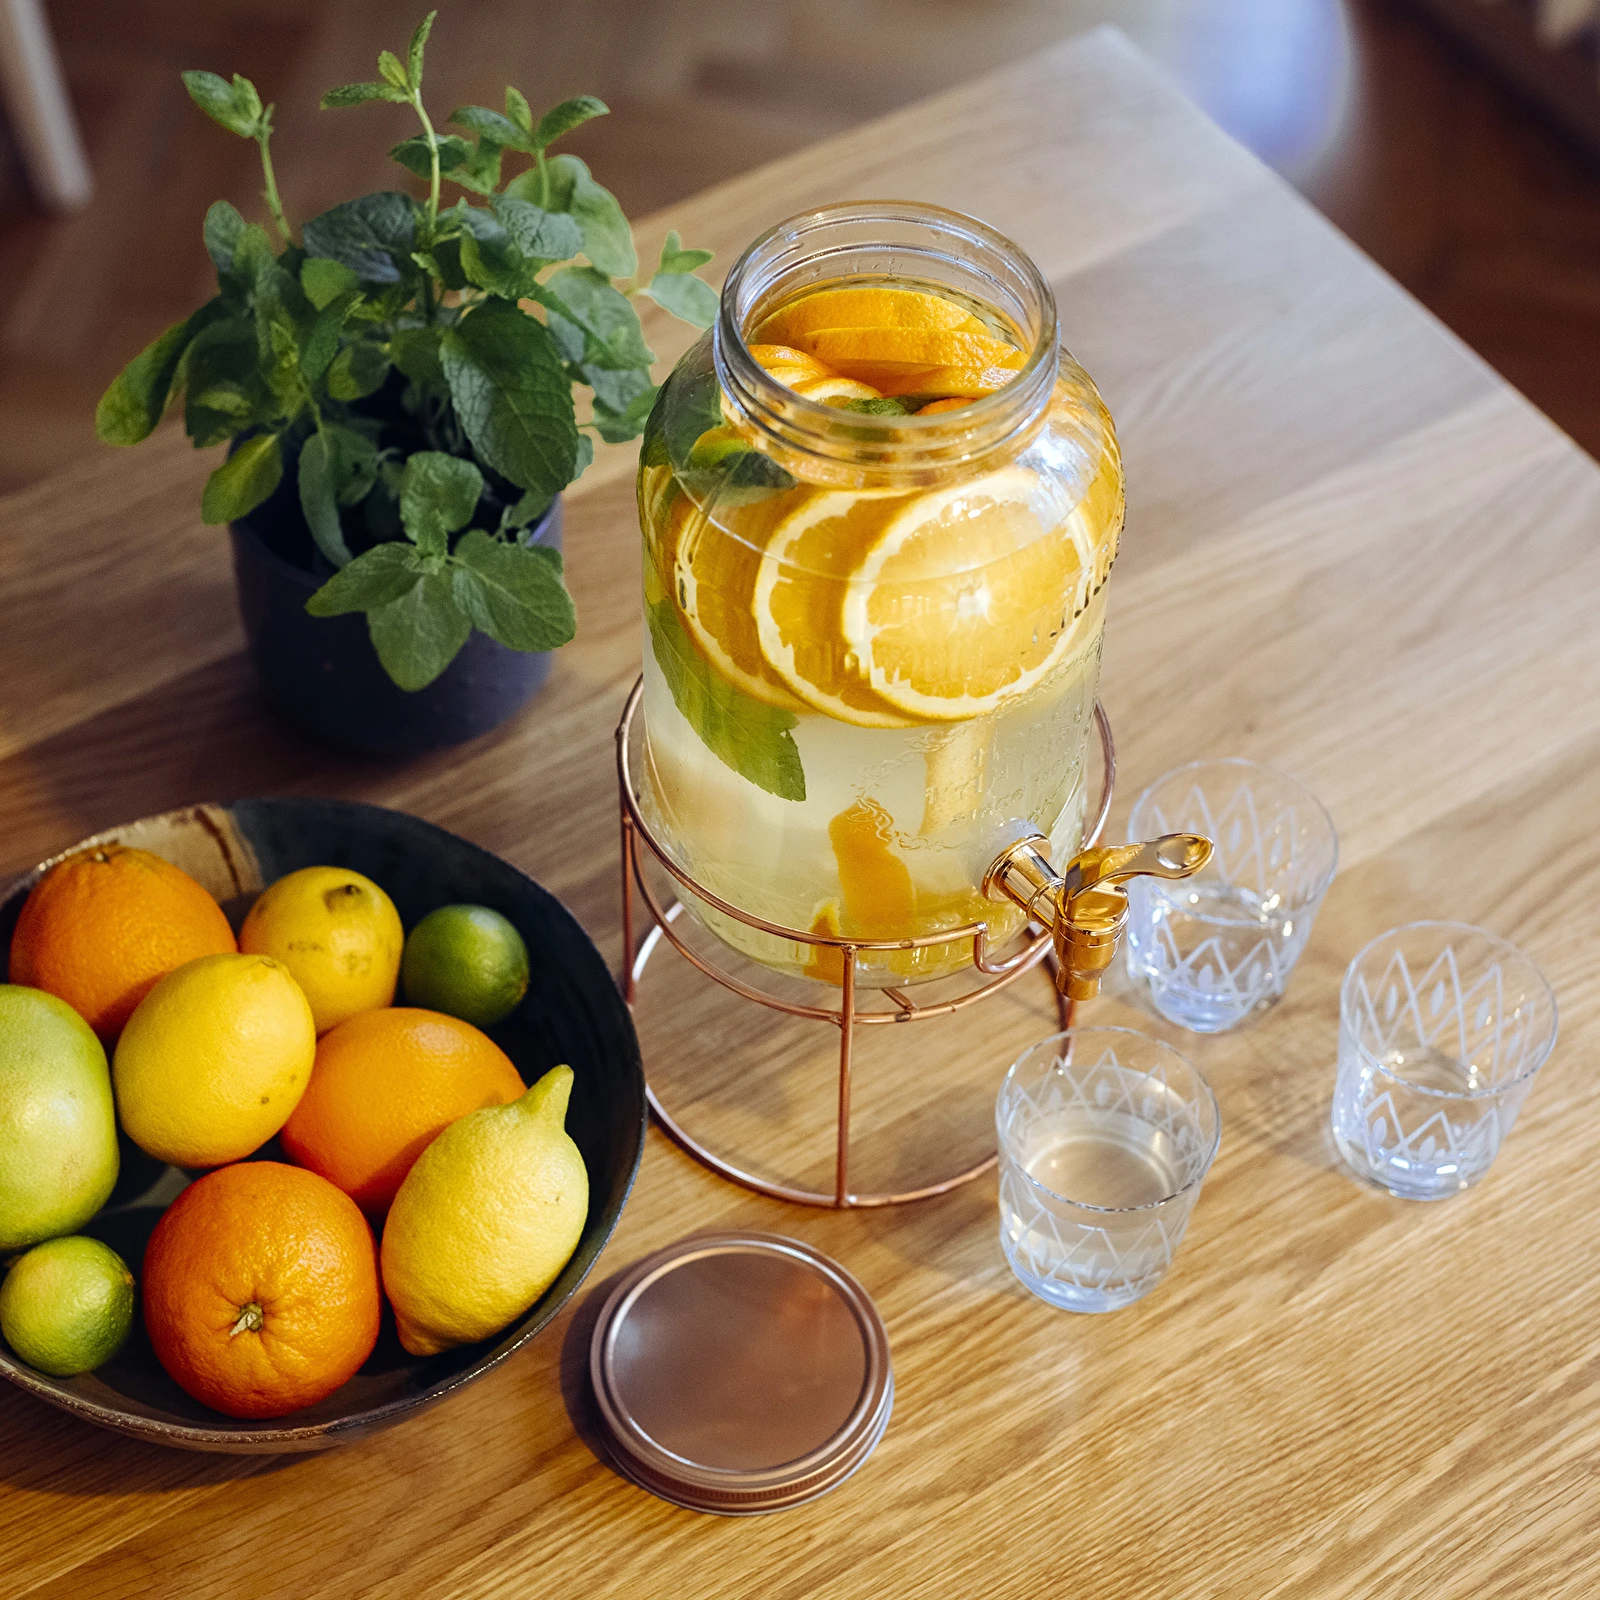 Bottle Jar Homemade Orange Lemon Lemonade Large Container Tap Stands Stock  Photo by ©vorobevaola 440969754